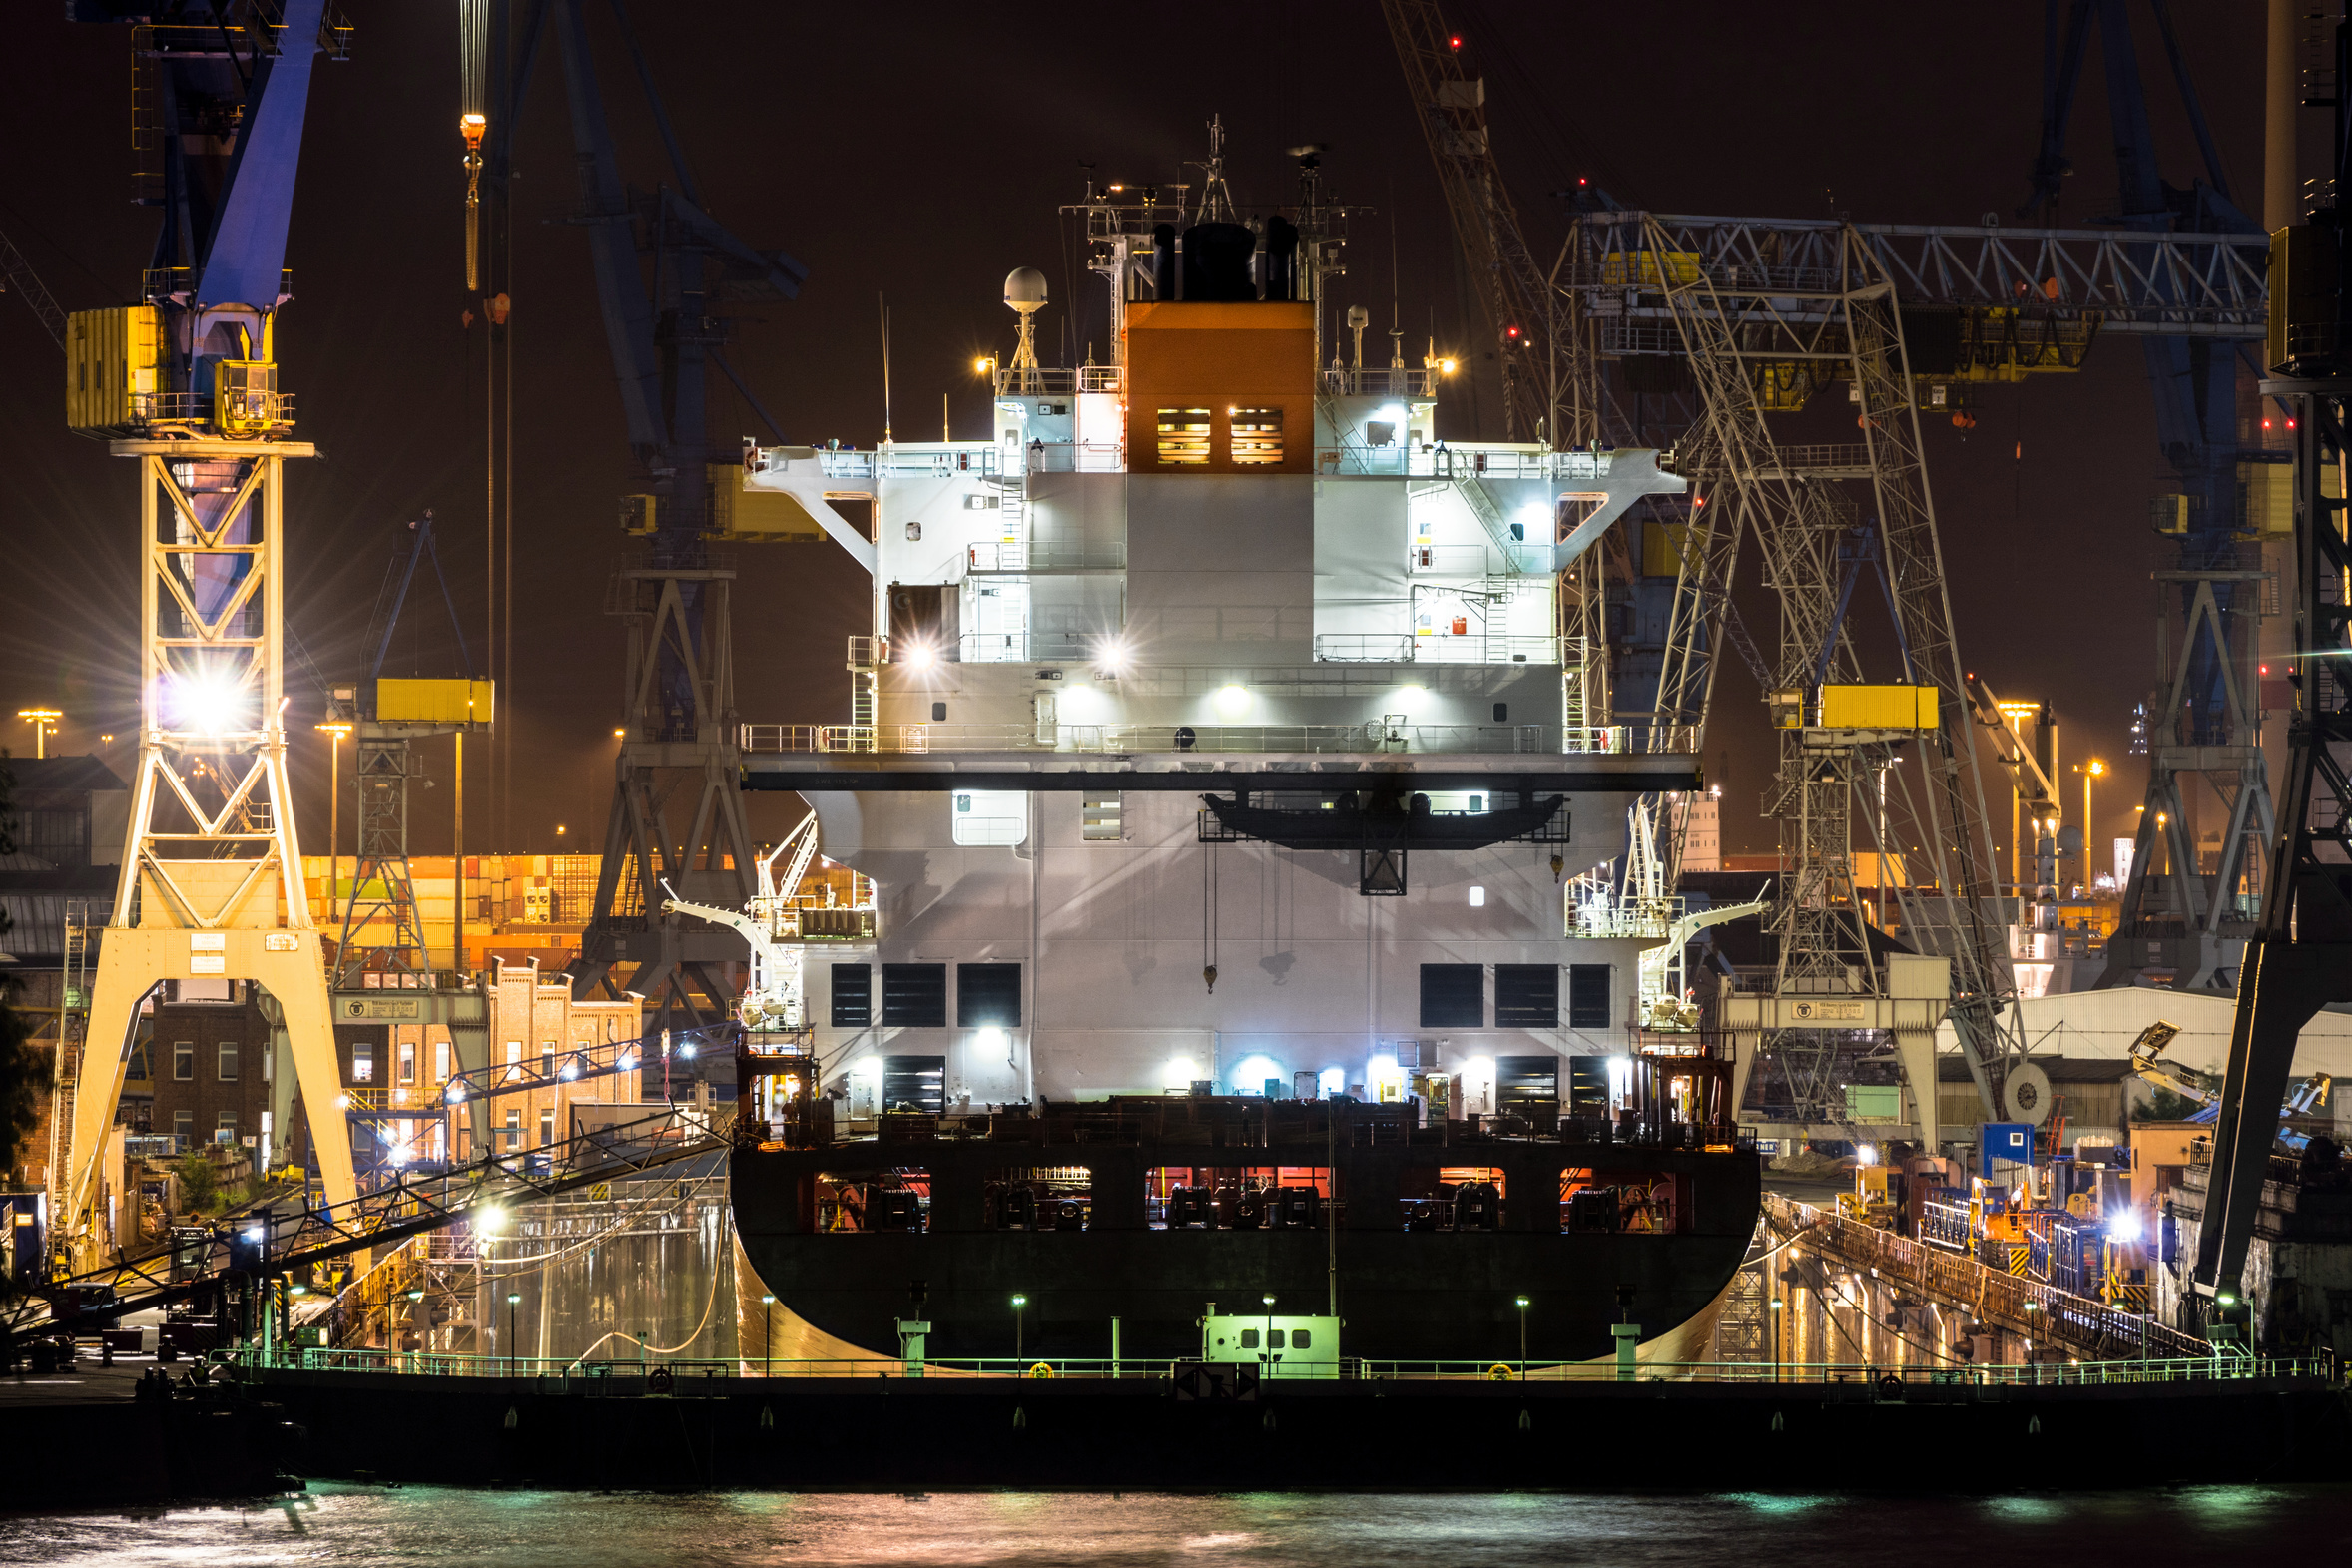 Schiff Liverpool Express von Blohm und Voss im Dock bei Nacht in Hamburg